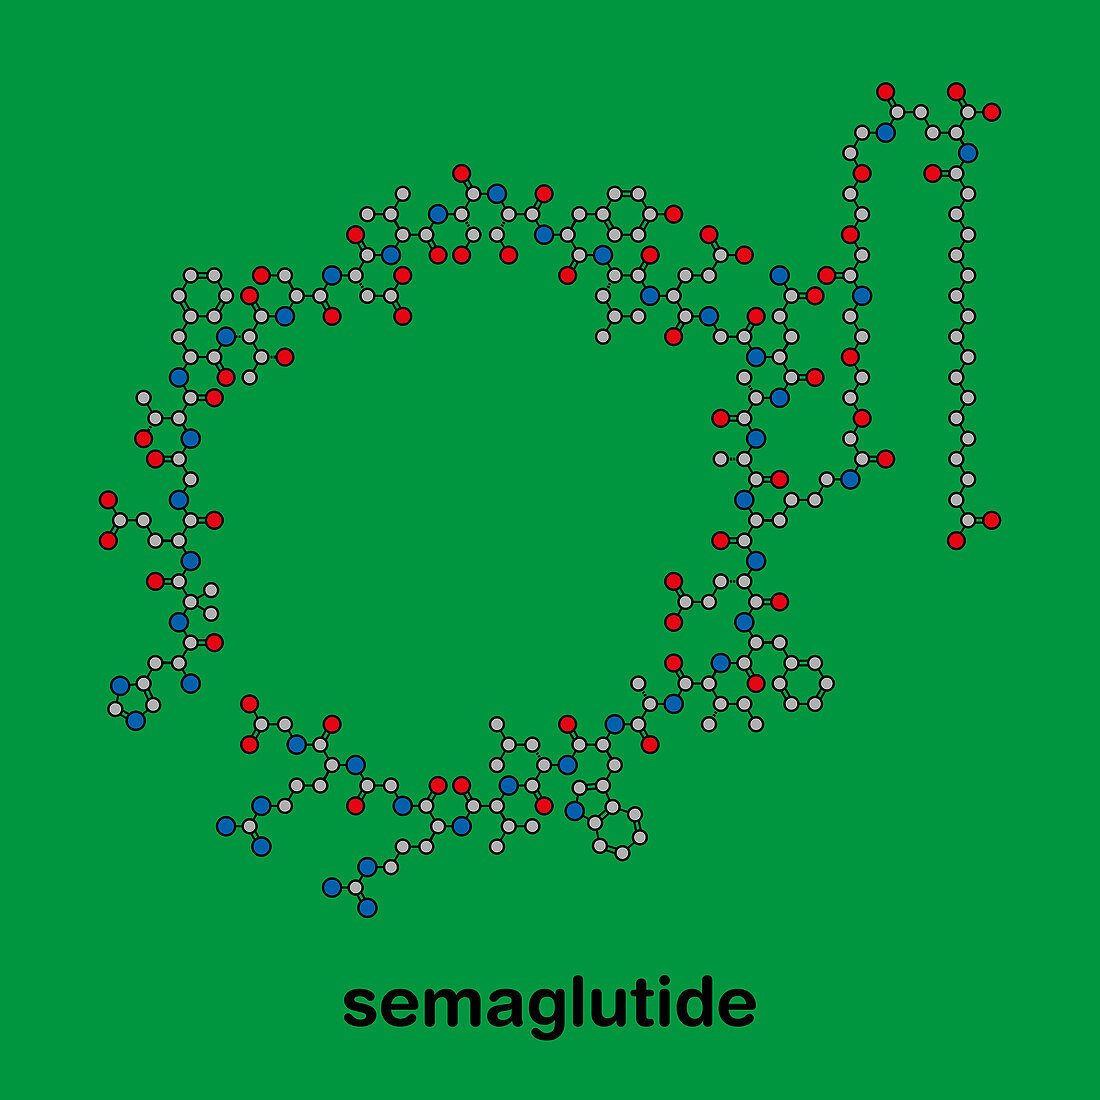 Semaglutide diabetes drug molecule, illustration